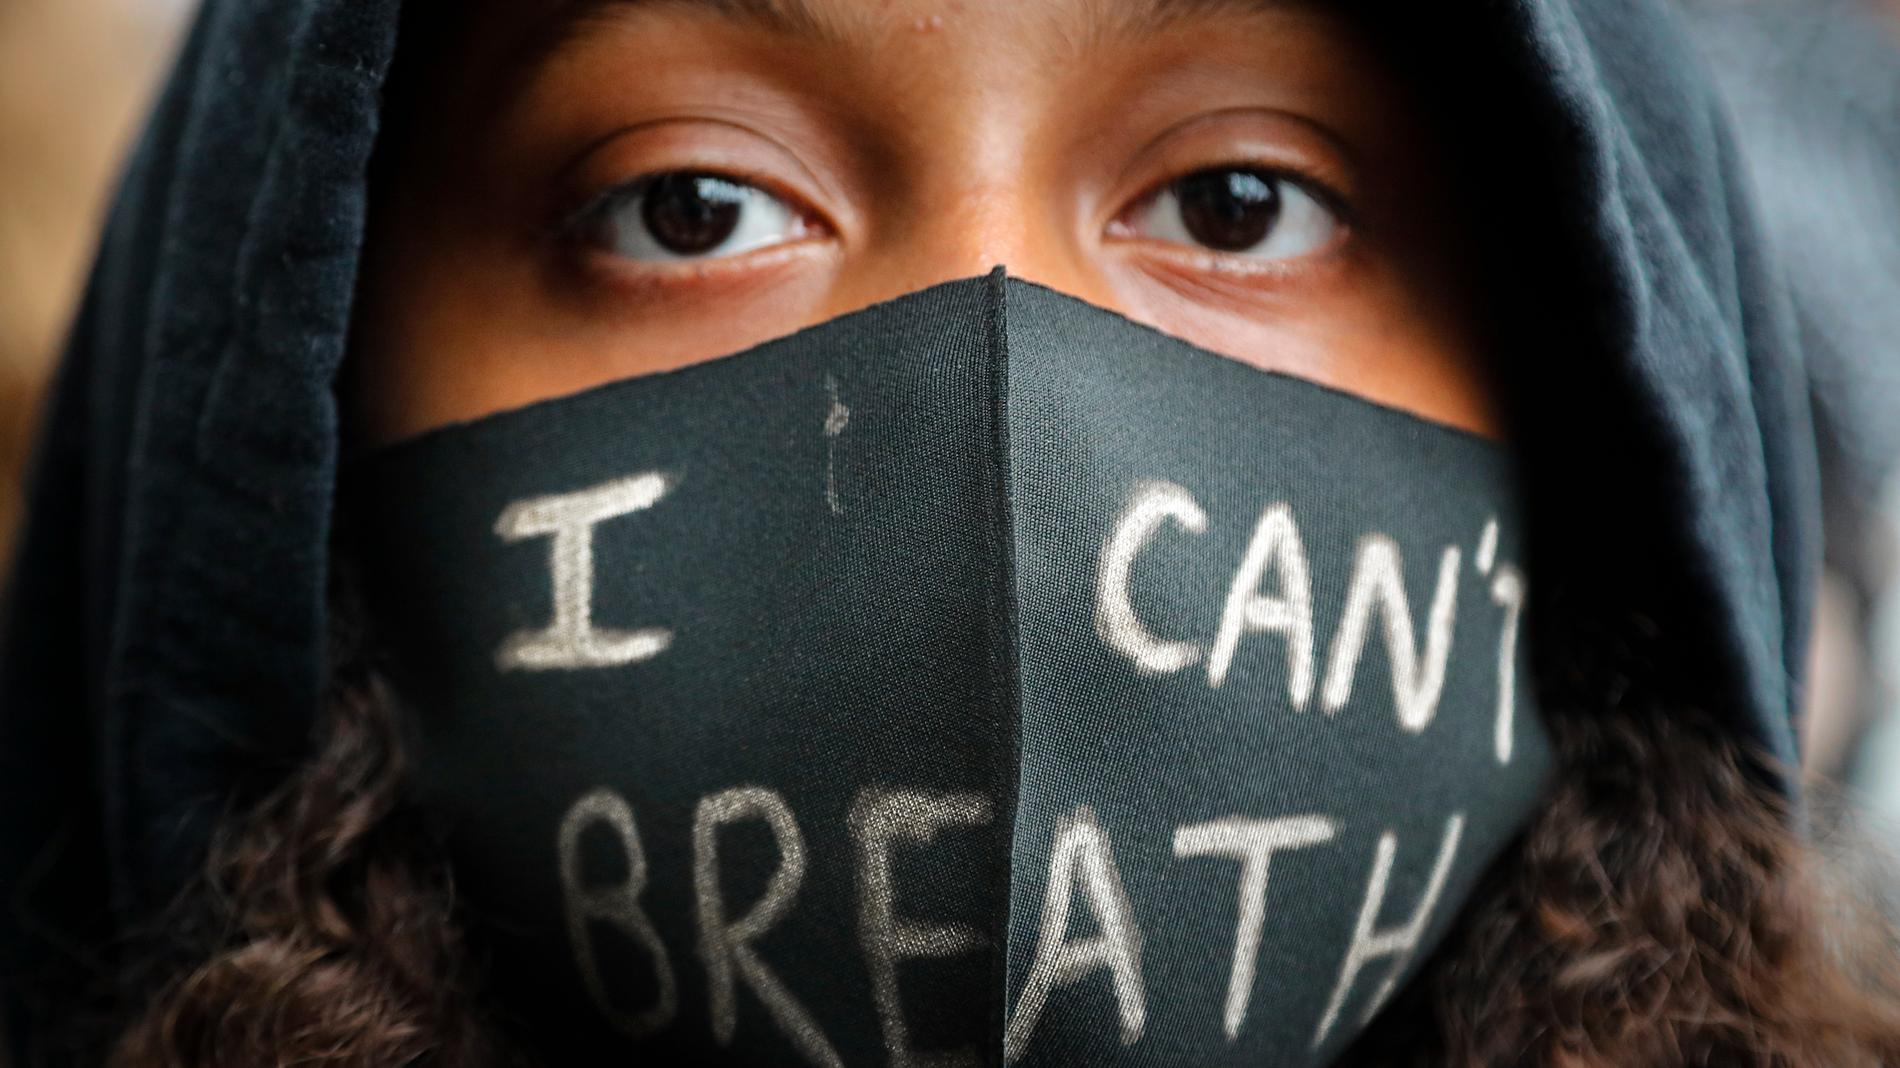 En flicka med munskydd under lördagens Black Lives Matter-demonstration i London. På munskyddet står det "jag kan inte andas" – de ord den svarte amerikanen George Floyd sade när en polisman sitt knä mot hans nacke. Floyd avled kort därpå.